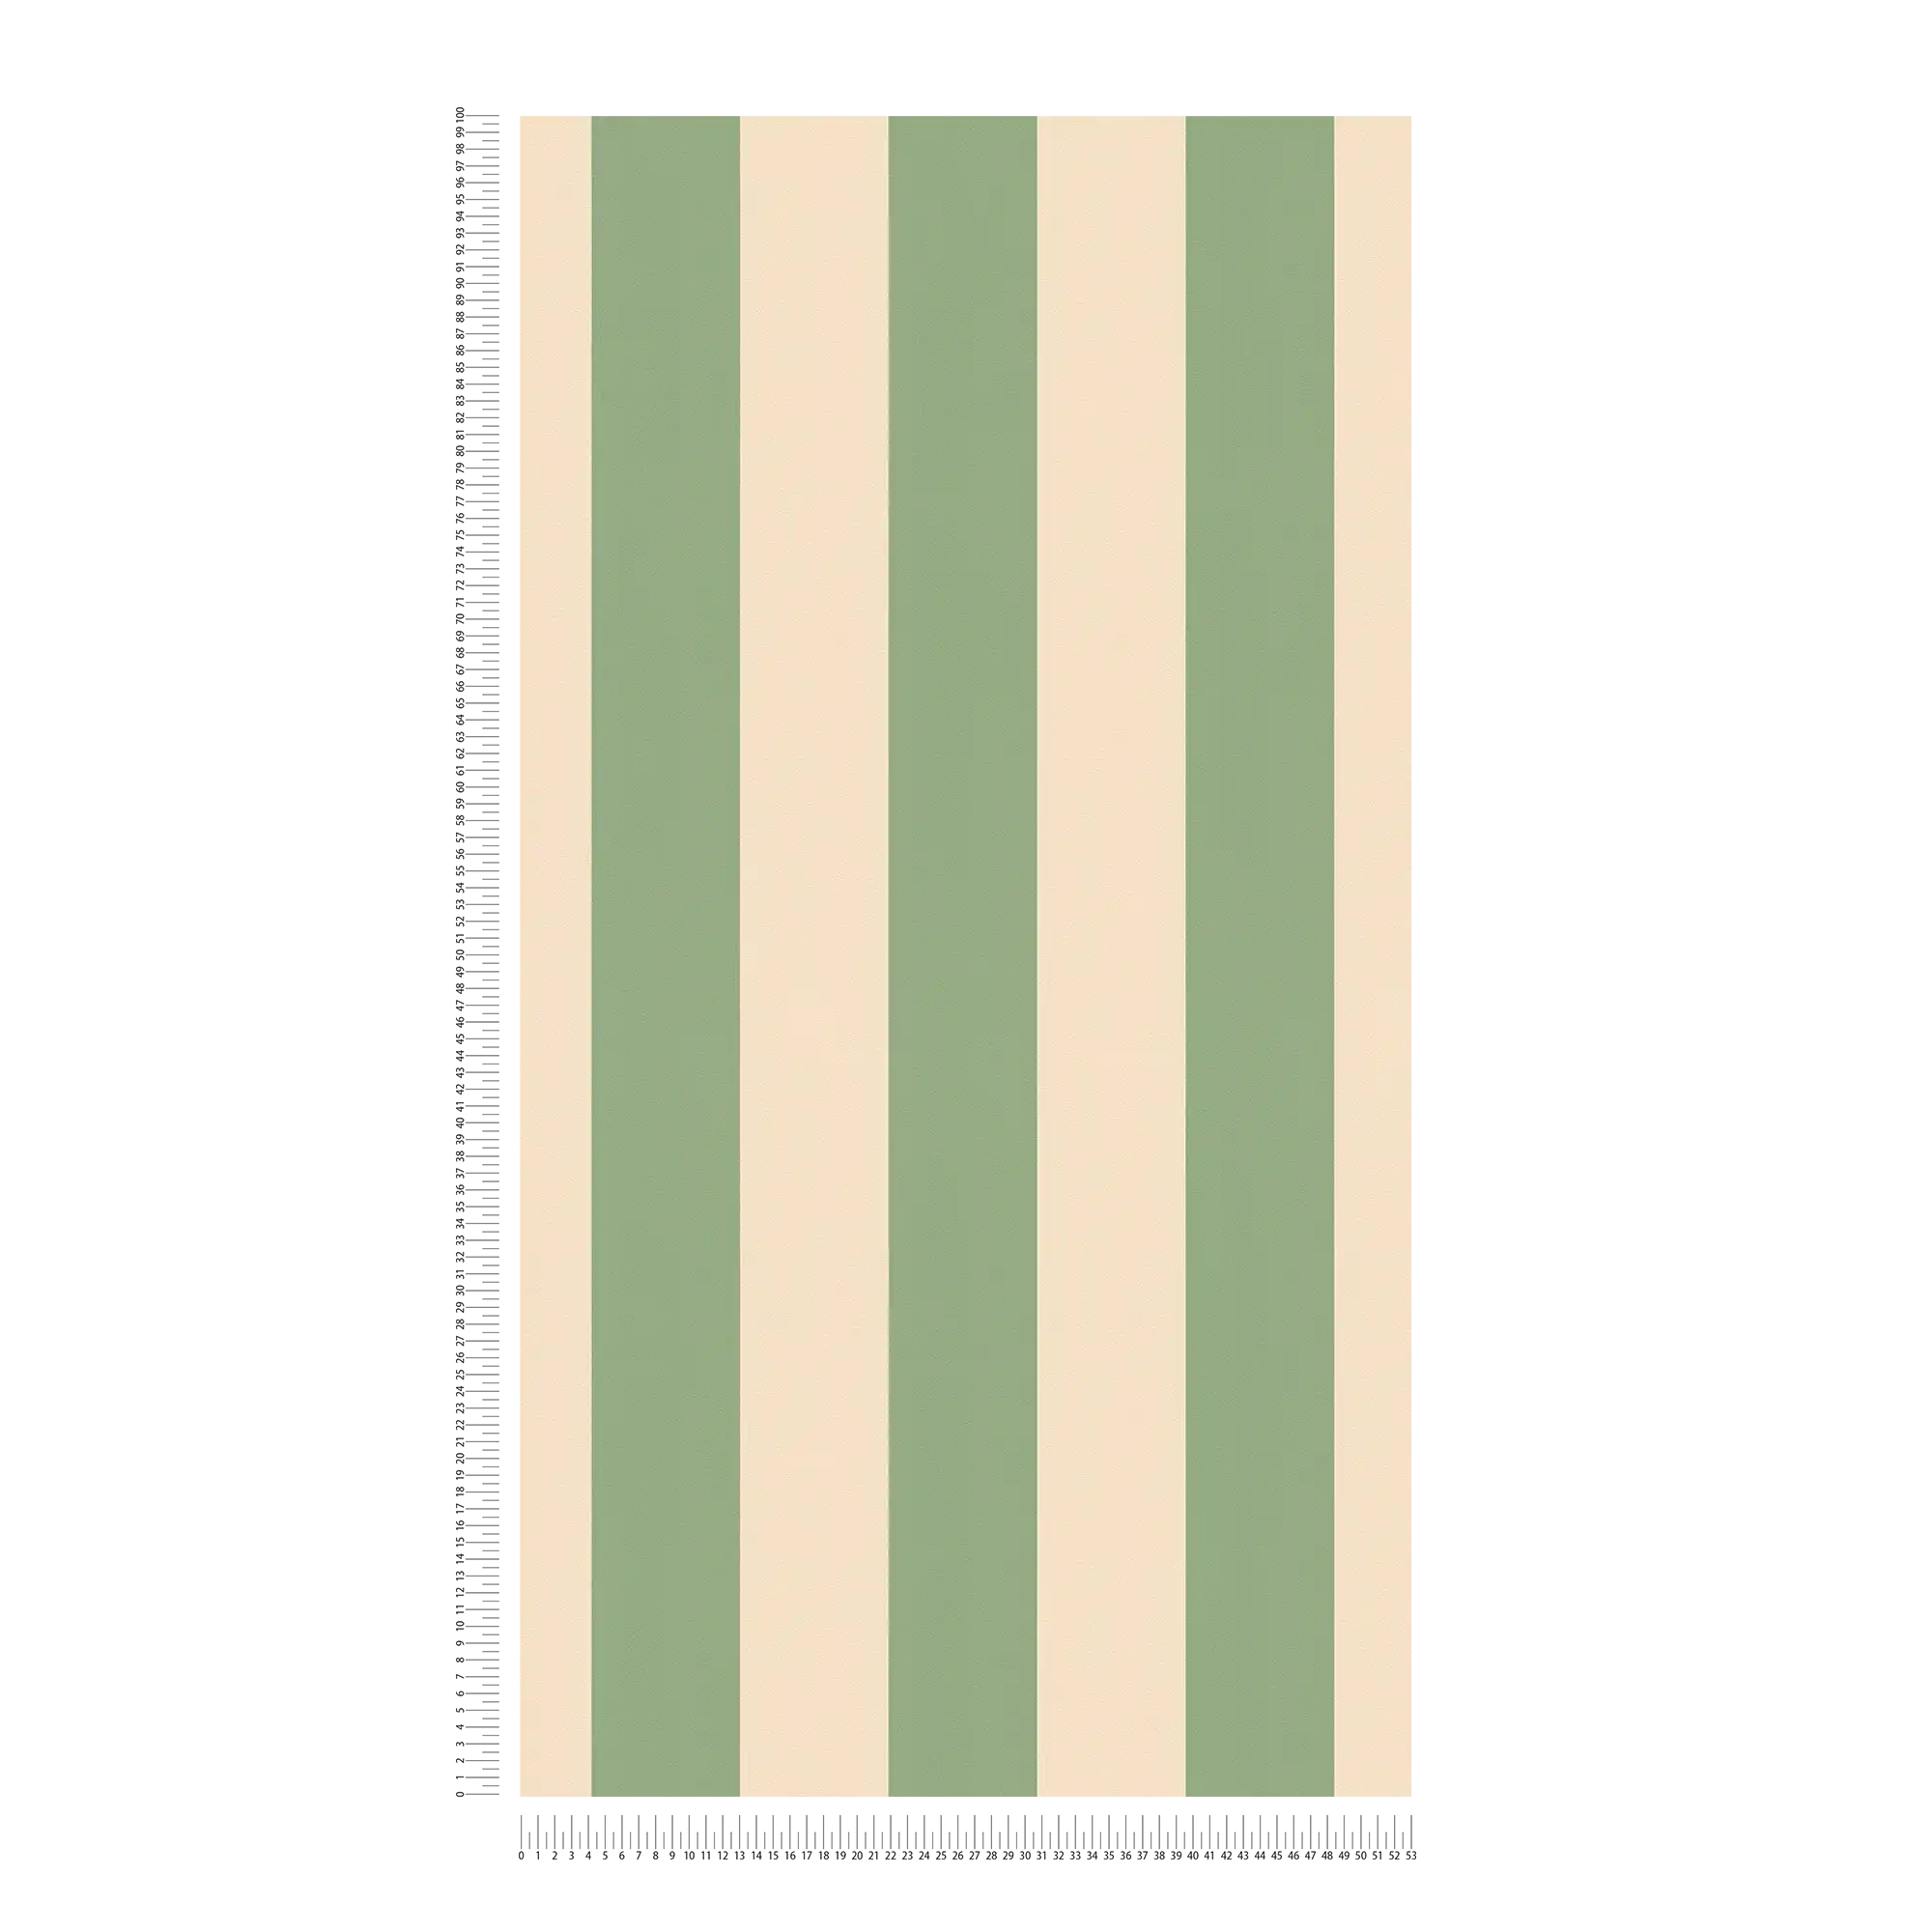             Papel pintado no tejido con rayas en bloque y estructura ligera - beige, verde
        